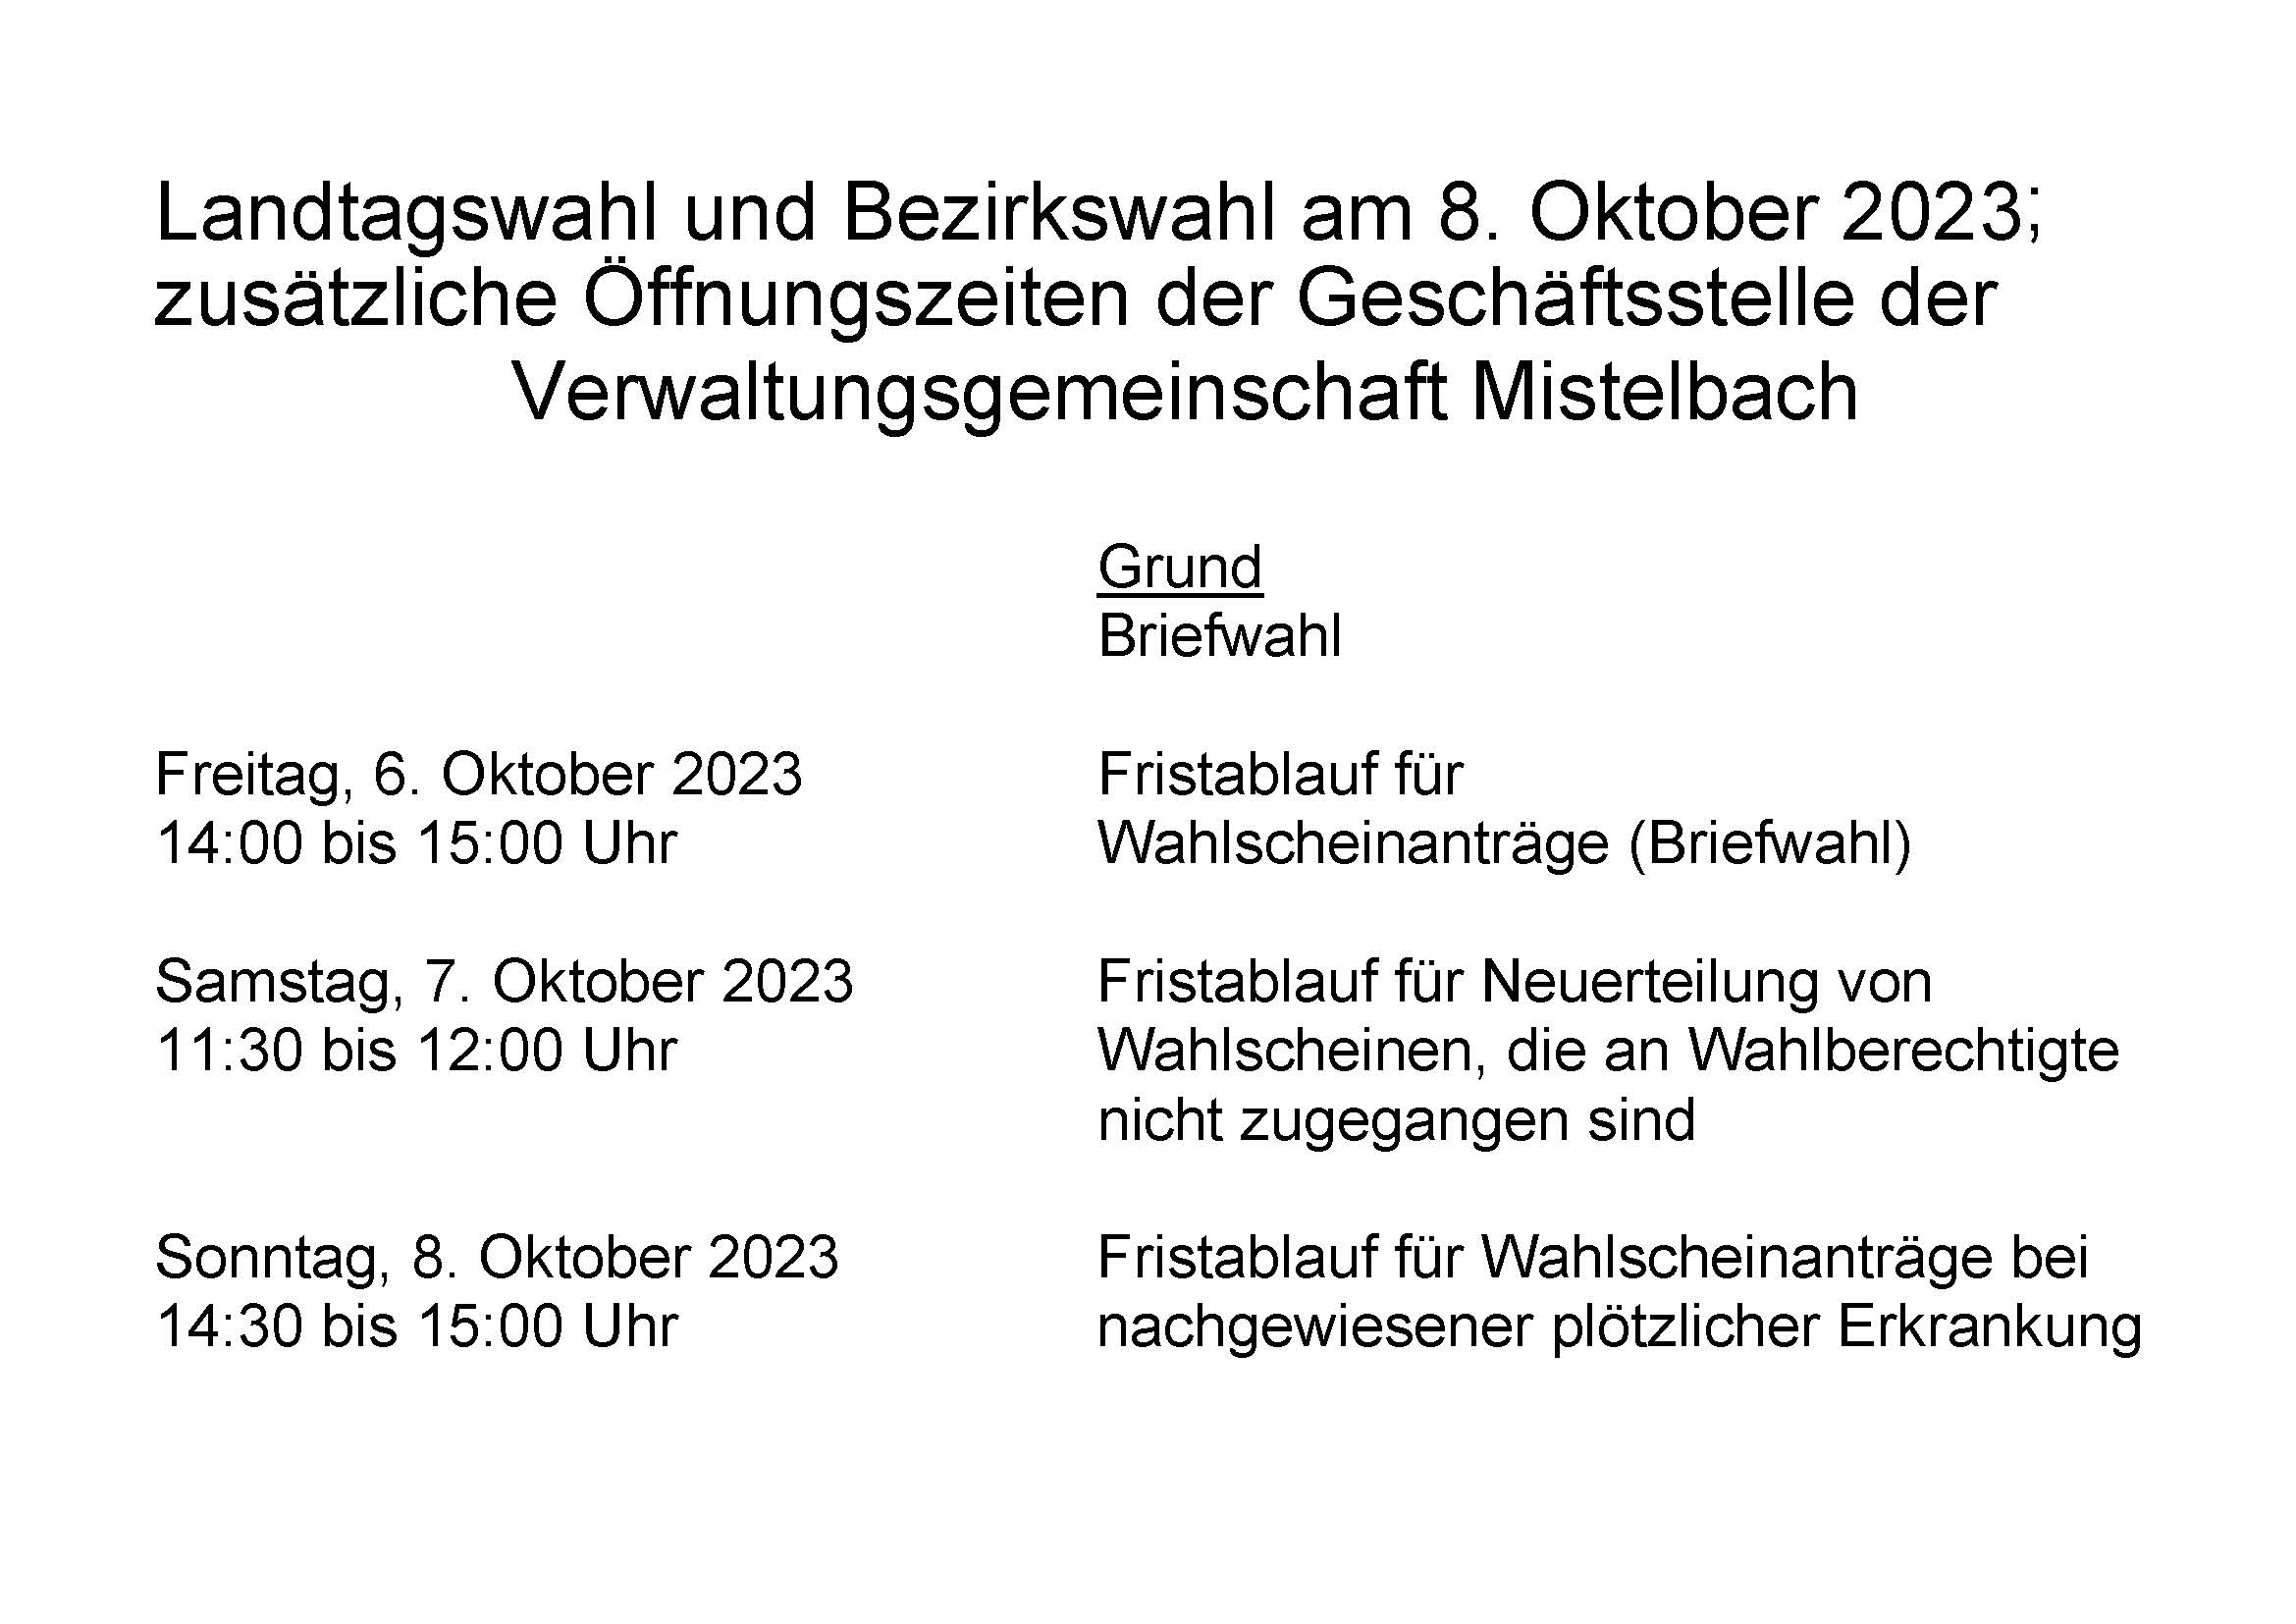 Sonderöffnungszeiten zur Landtags- und Bezirkswahl am 8. Oktober 2023